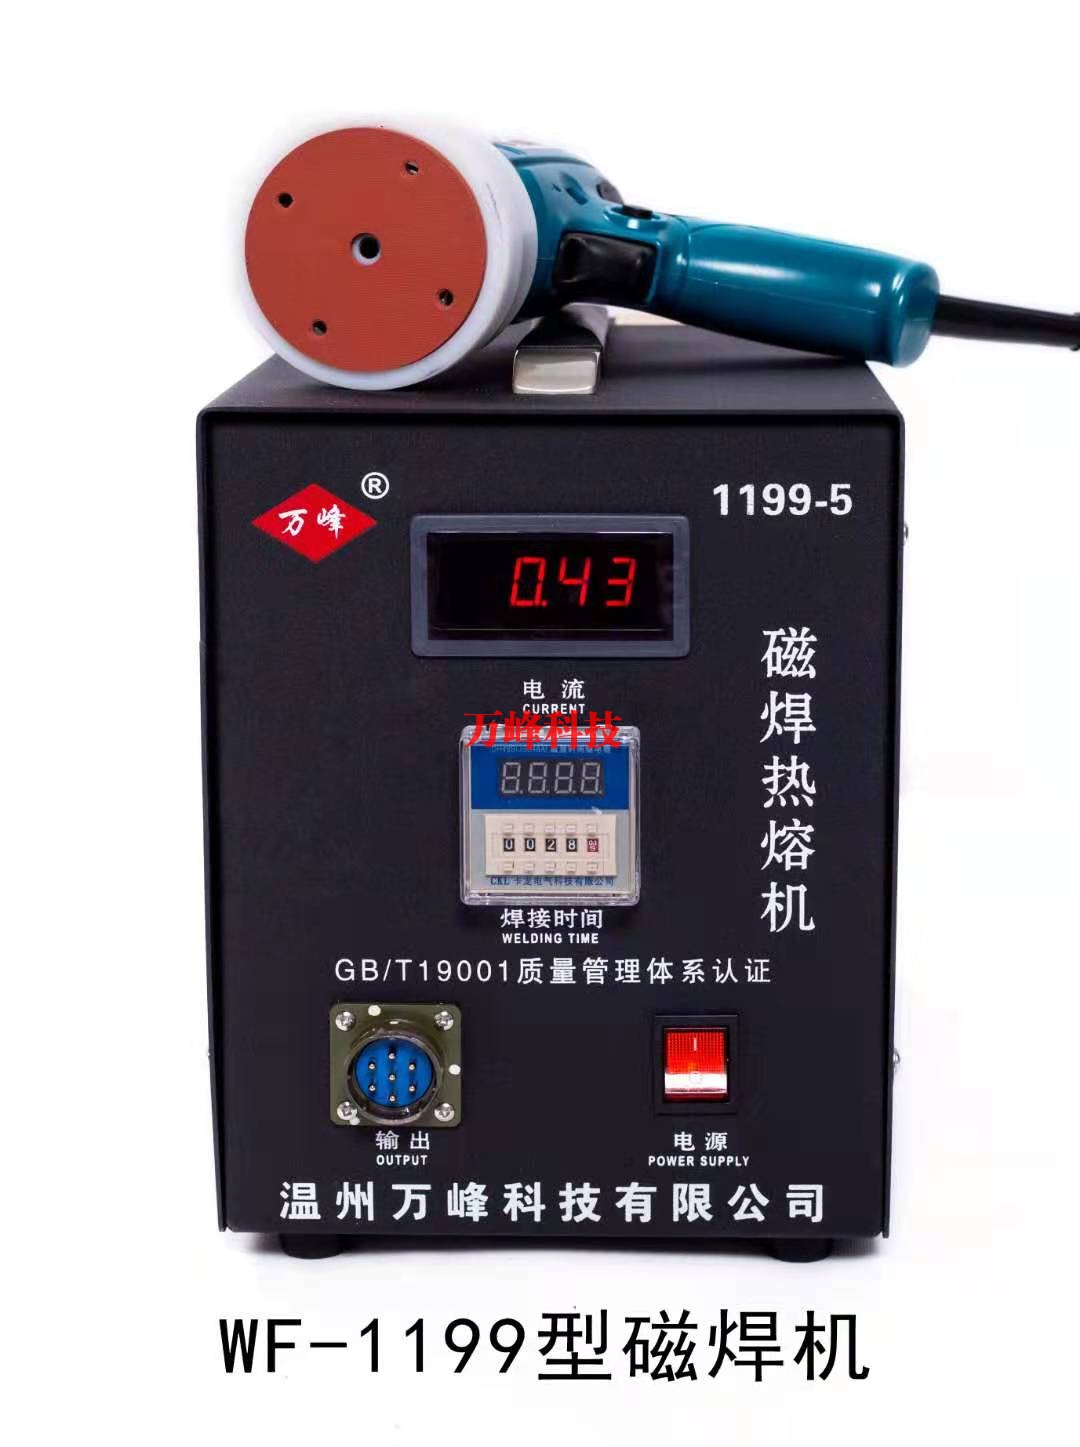 宿迁WF-1199型磁焊热熔机